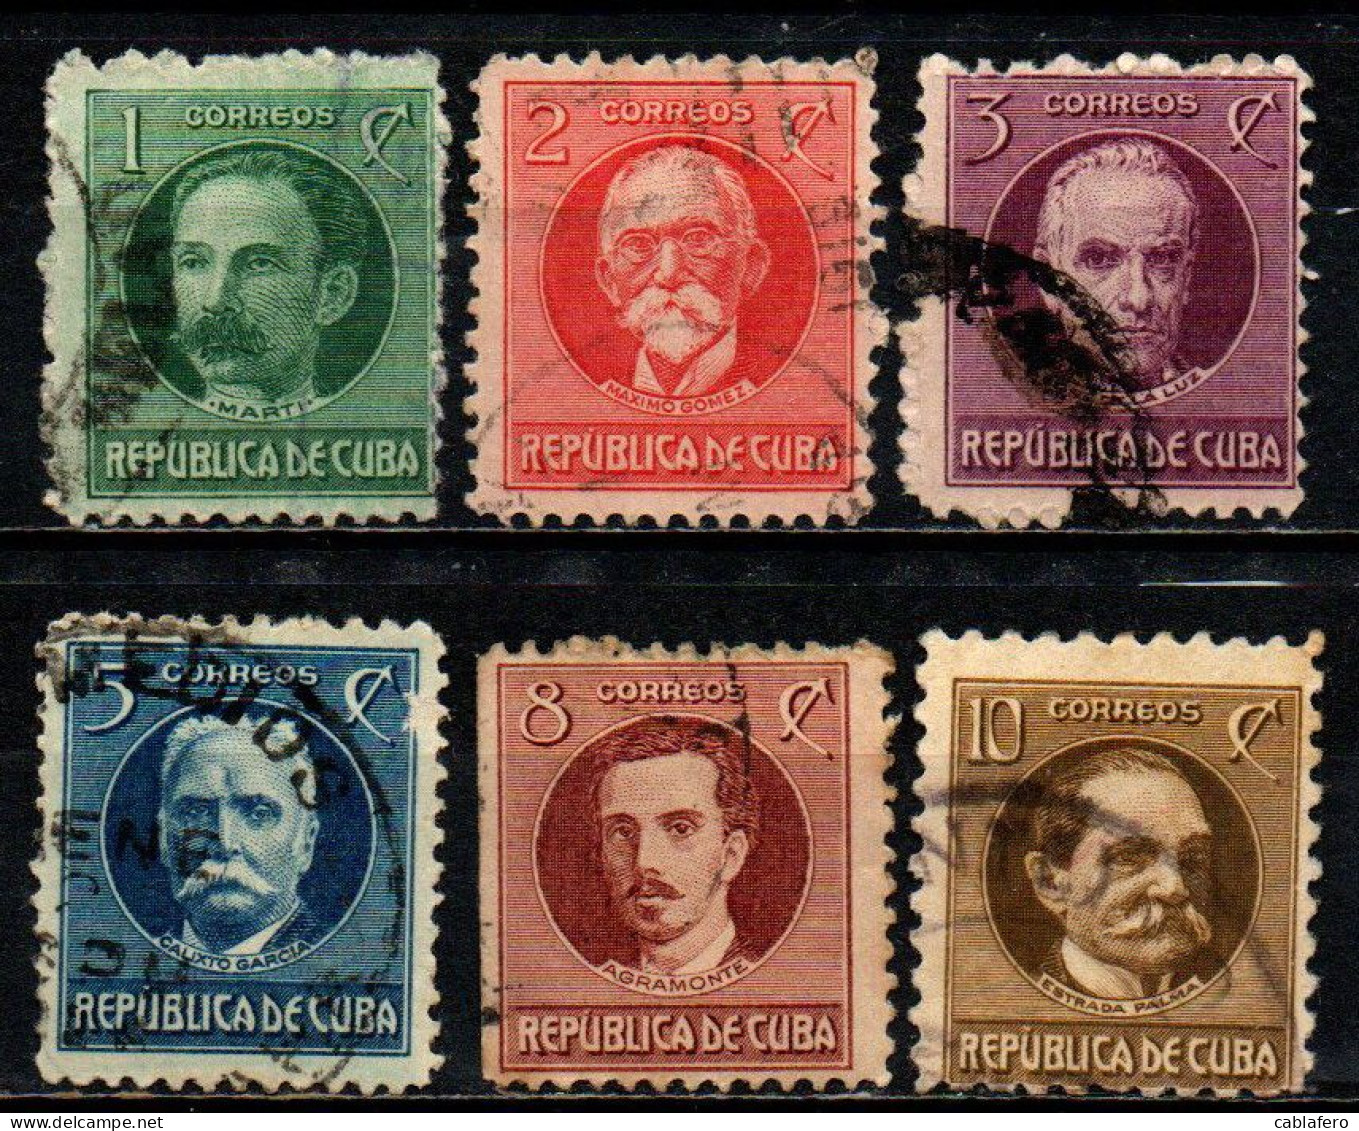 CUBA - 1917 - PERSONALITA' DEL SUDAMERICA: JOSE' MARTI, MAXIMO GOMEZ, JOSE' DE LA LUZ CABALLERO, CALIXTO GARCIA, IGNACIO - Gebruikt